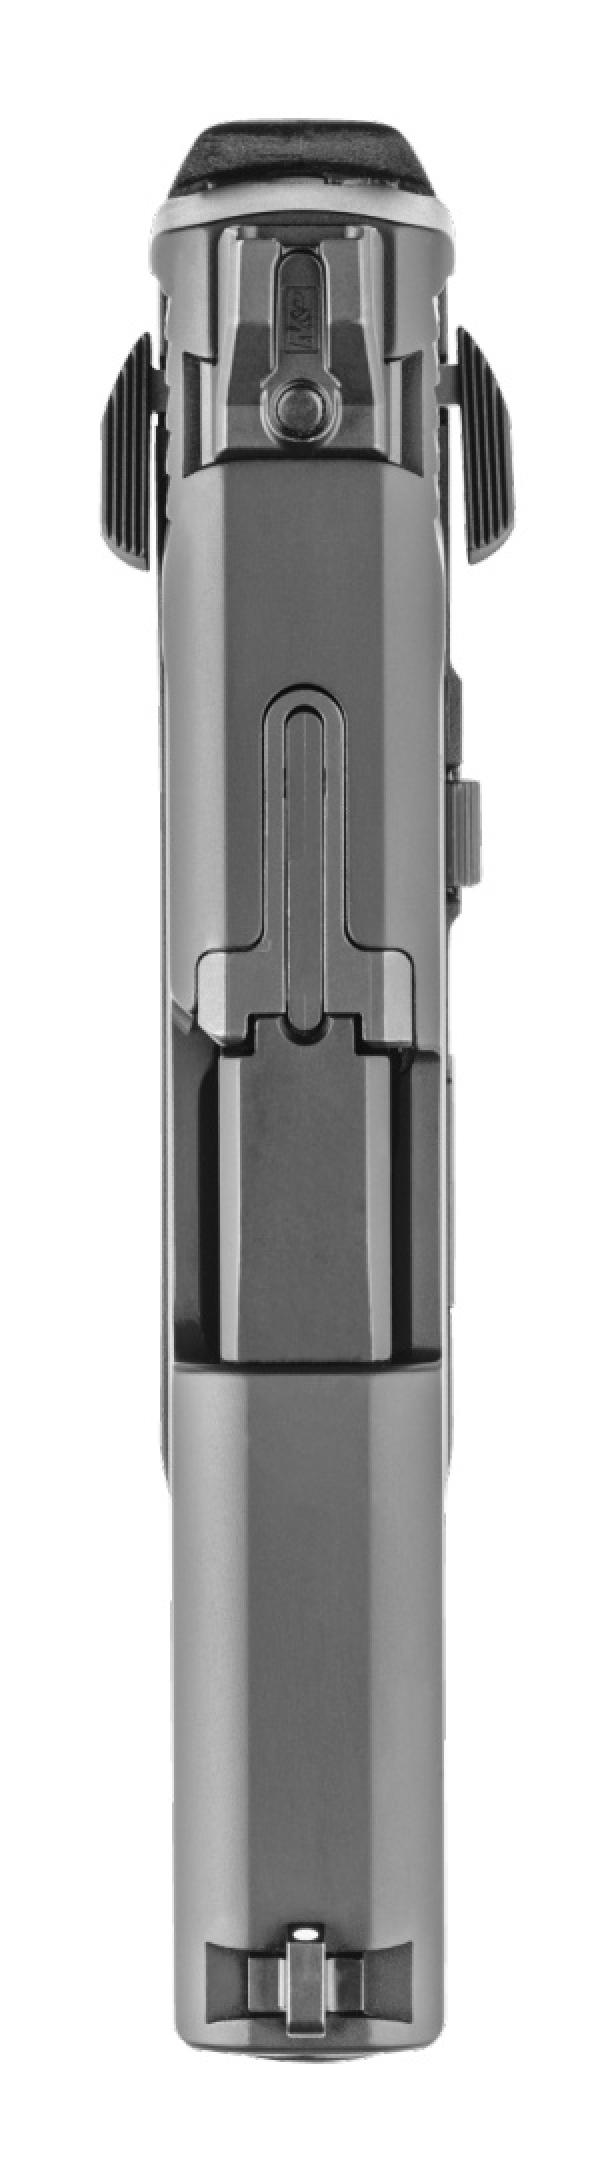 Smith & Wesson M&P Shield EZ 30 Super Carry